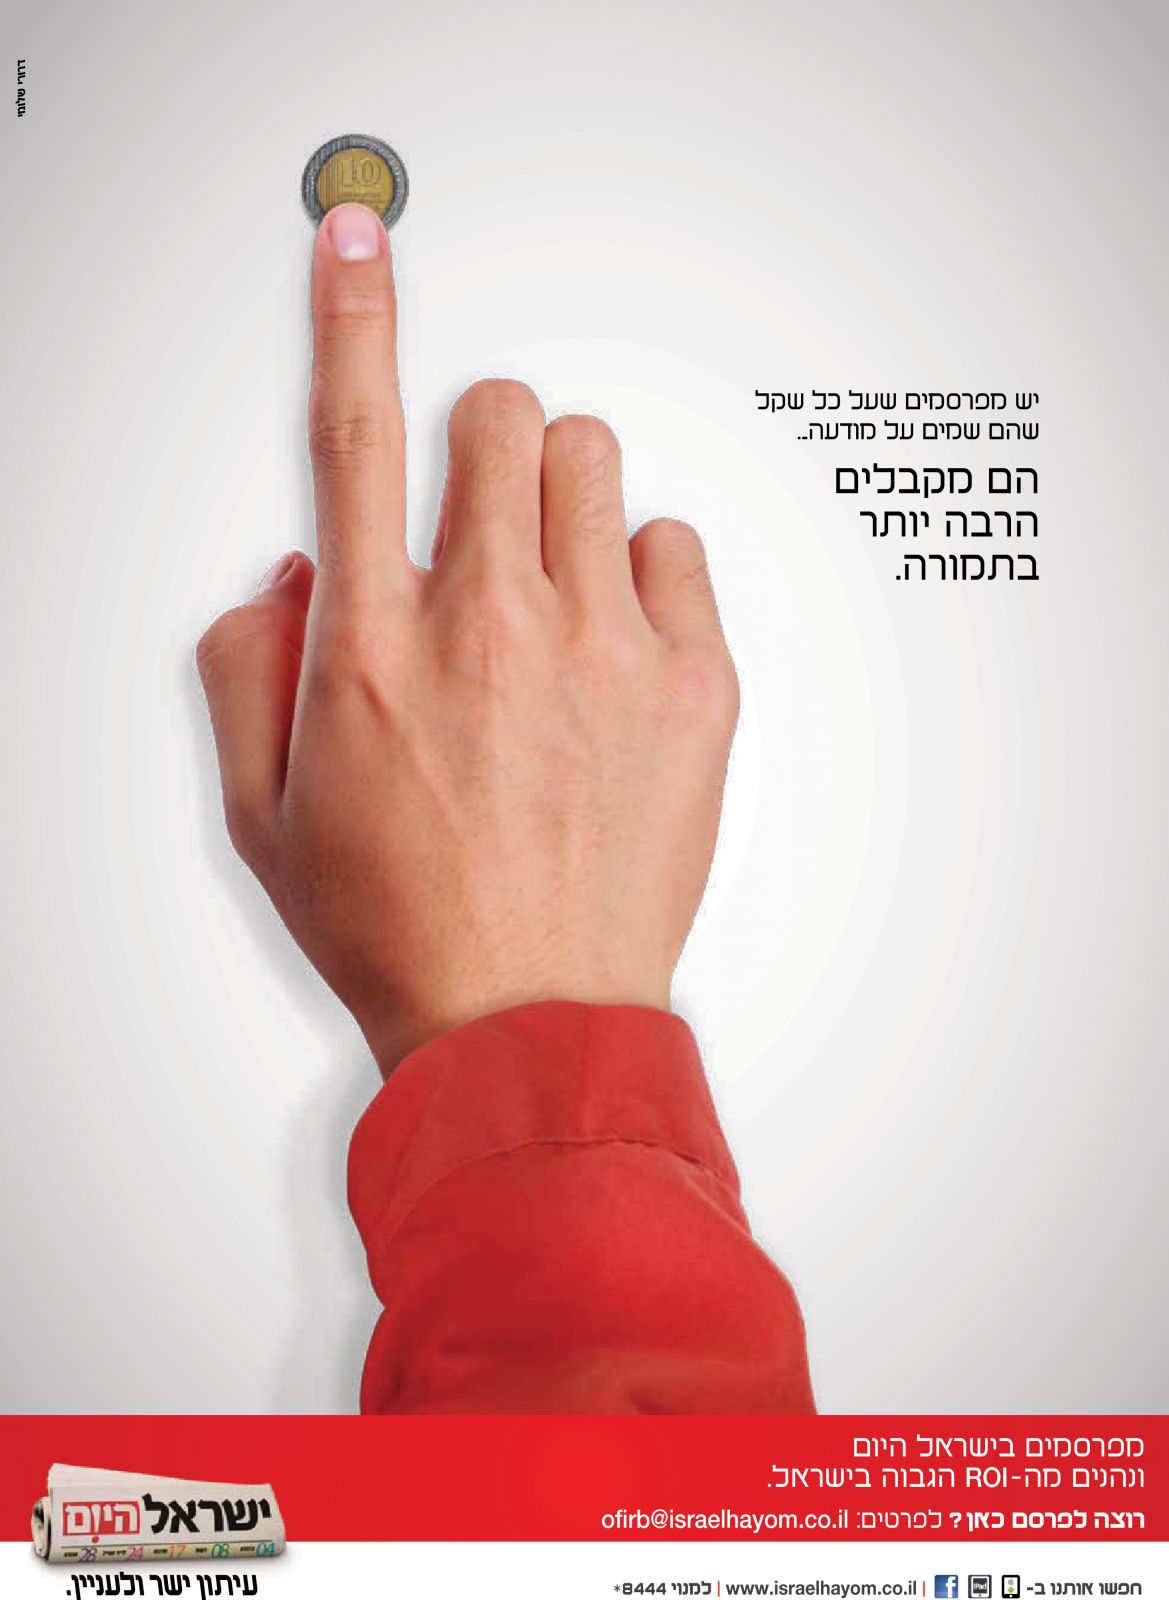 פרסומת עצמית של מחלקת המודעות ב"ישראל היום", 2014-2013